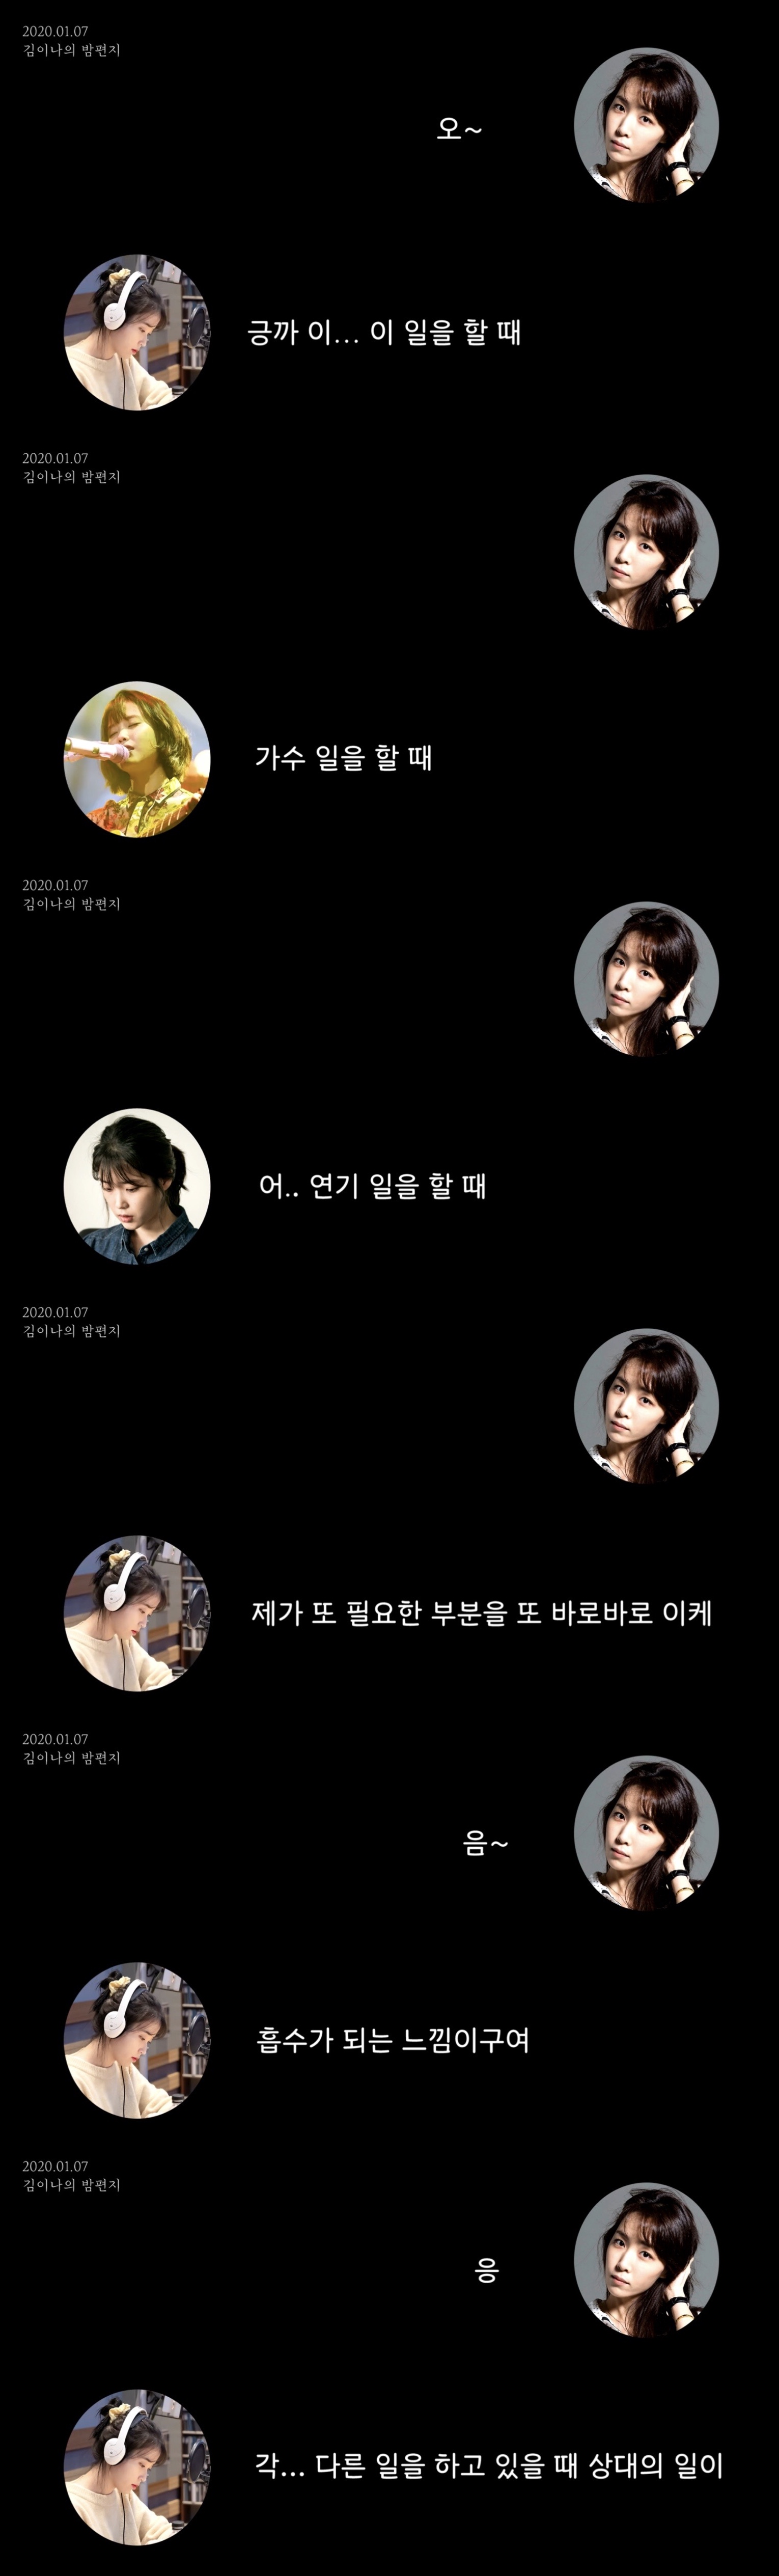 아이유와 김이나가 이야기 하는 가수-배우 활동 병행 | 인스티즈